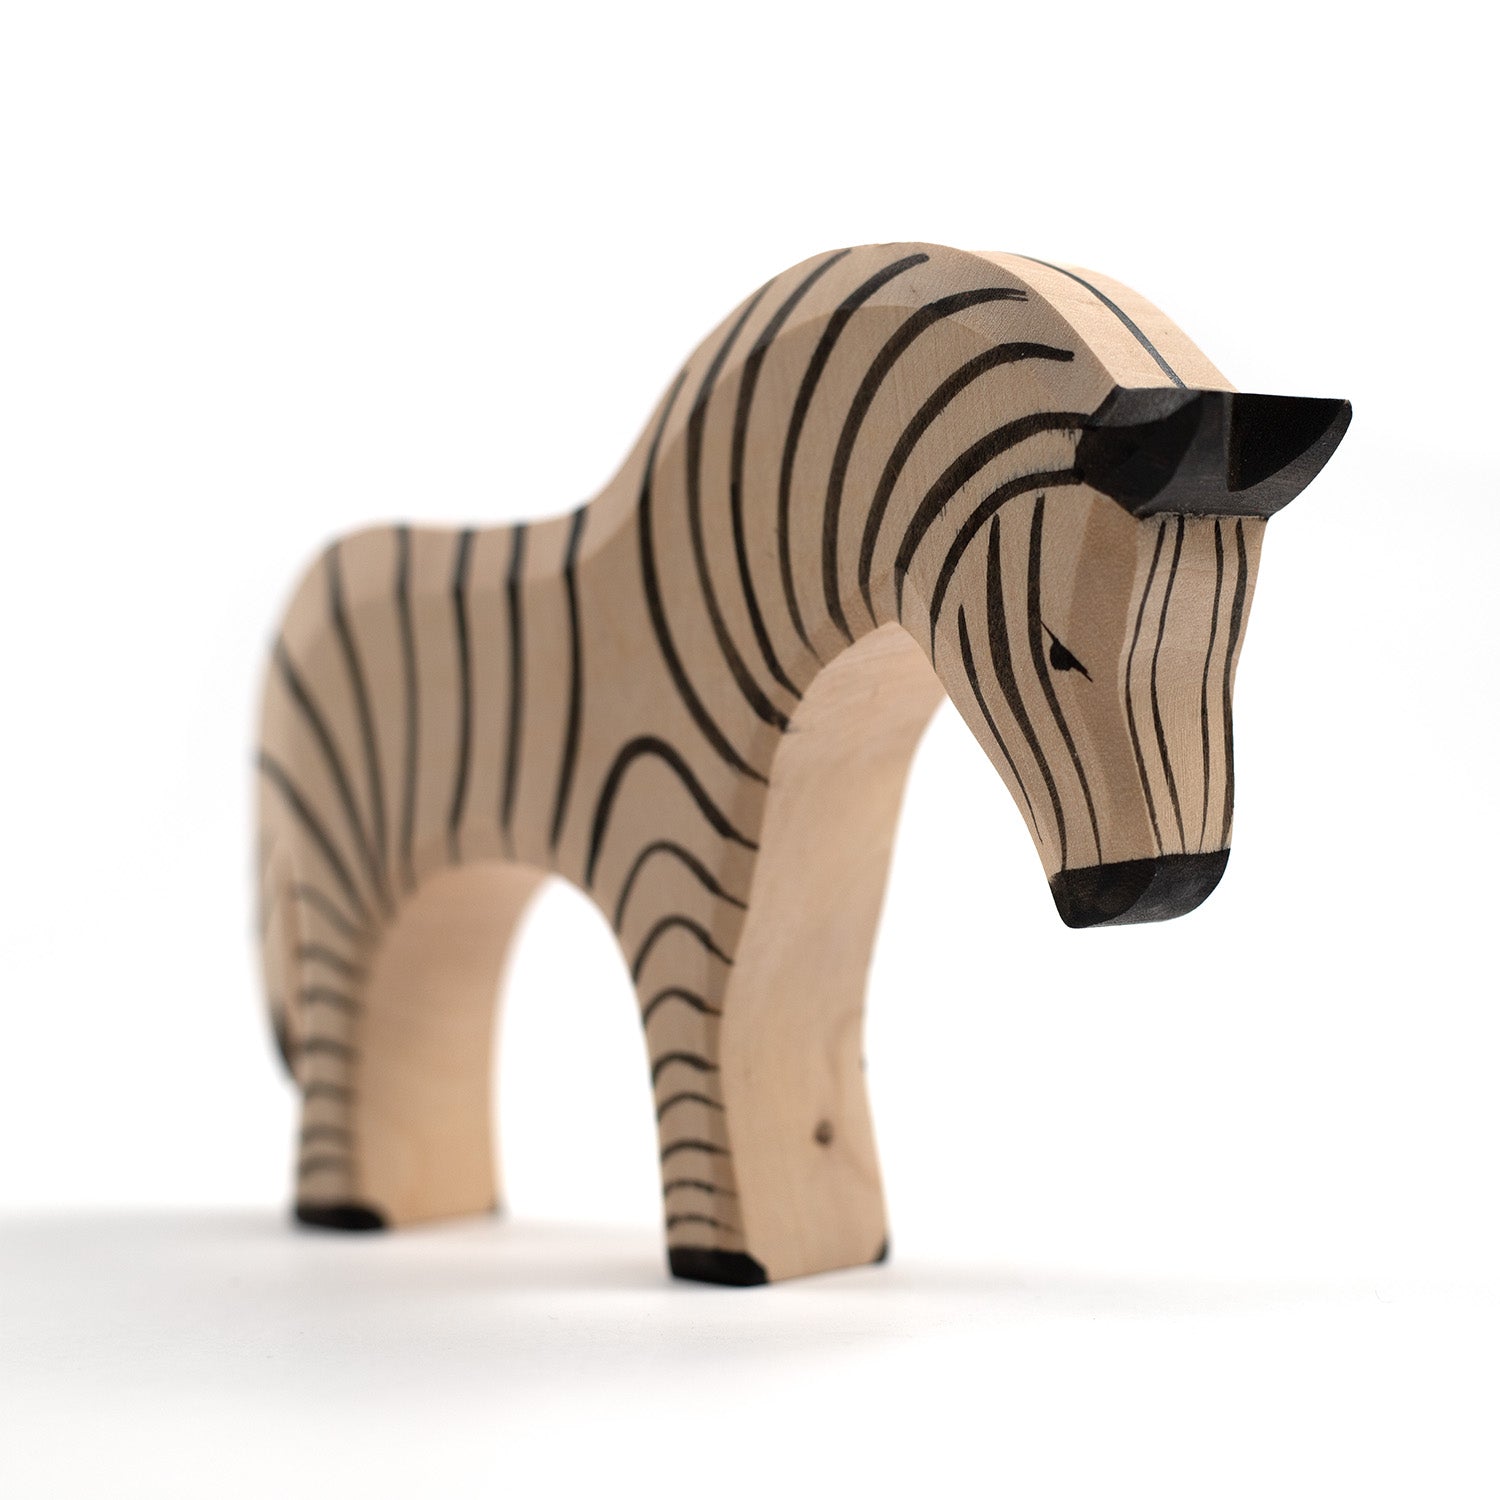 Houten speelgoed dieren - Zebra - Montessori - Open einde speelgoed - Lille Barn - With ♥ for the smallest